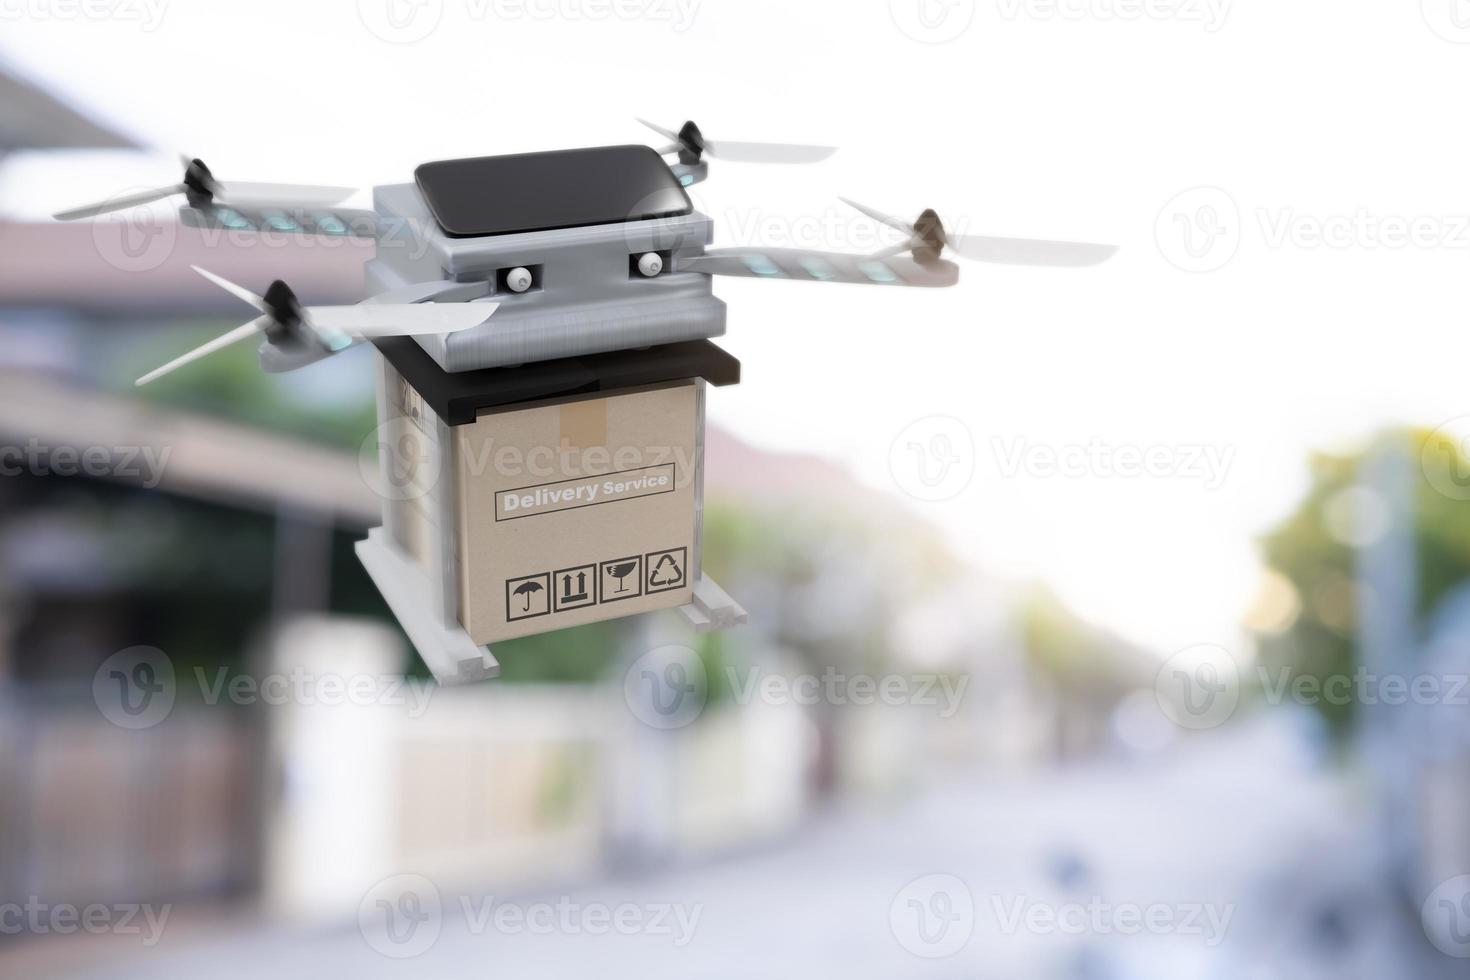 Drohnentechnologie-Engineering-Gerät für die Industrie fliegen in der Industrie zum Logistikexport Importprodukt Heimlieferservice Logistik Versand Transport Transport oder Autoteile-Ausstellungsraum foto